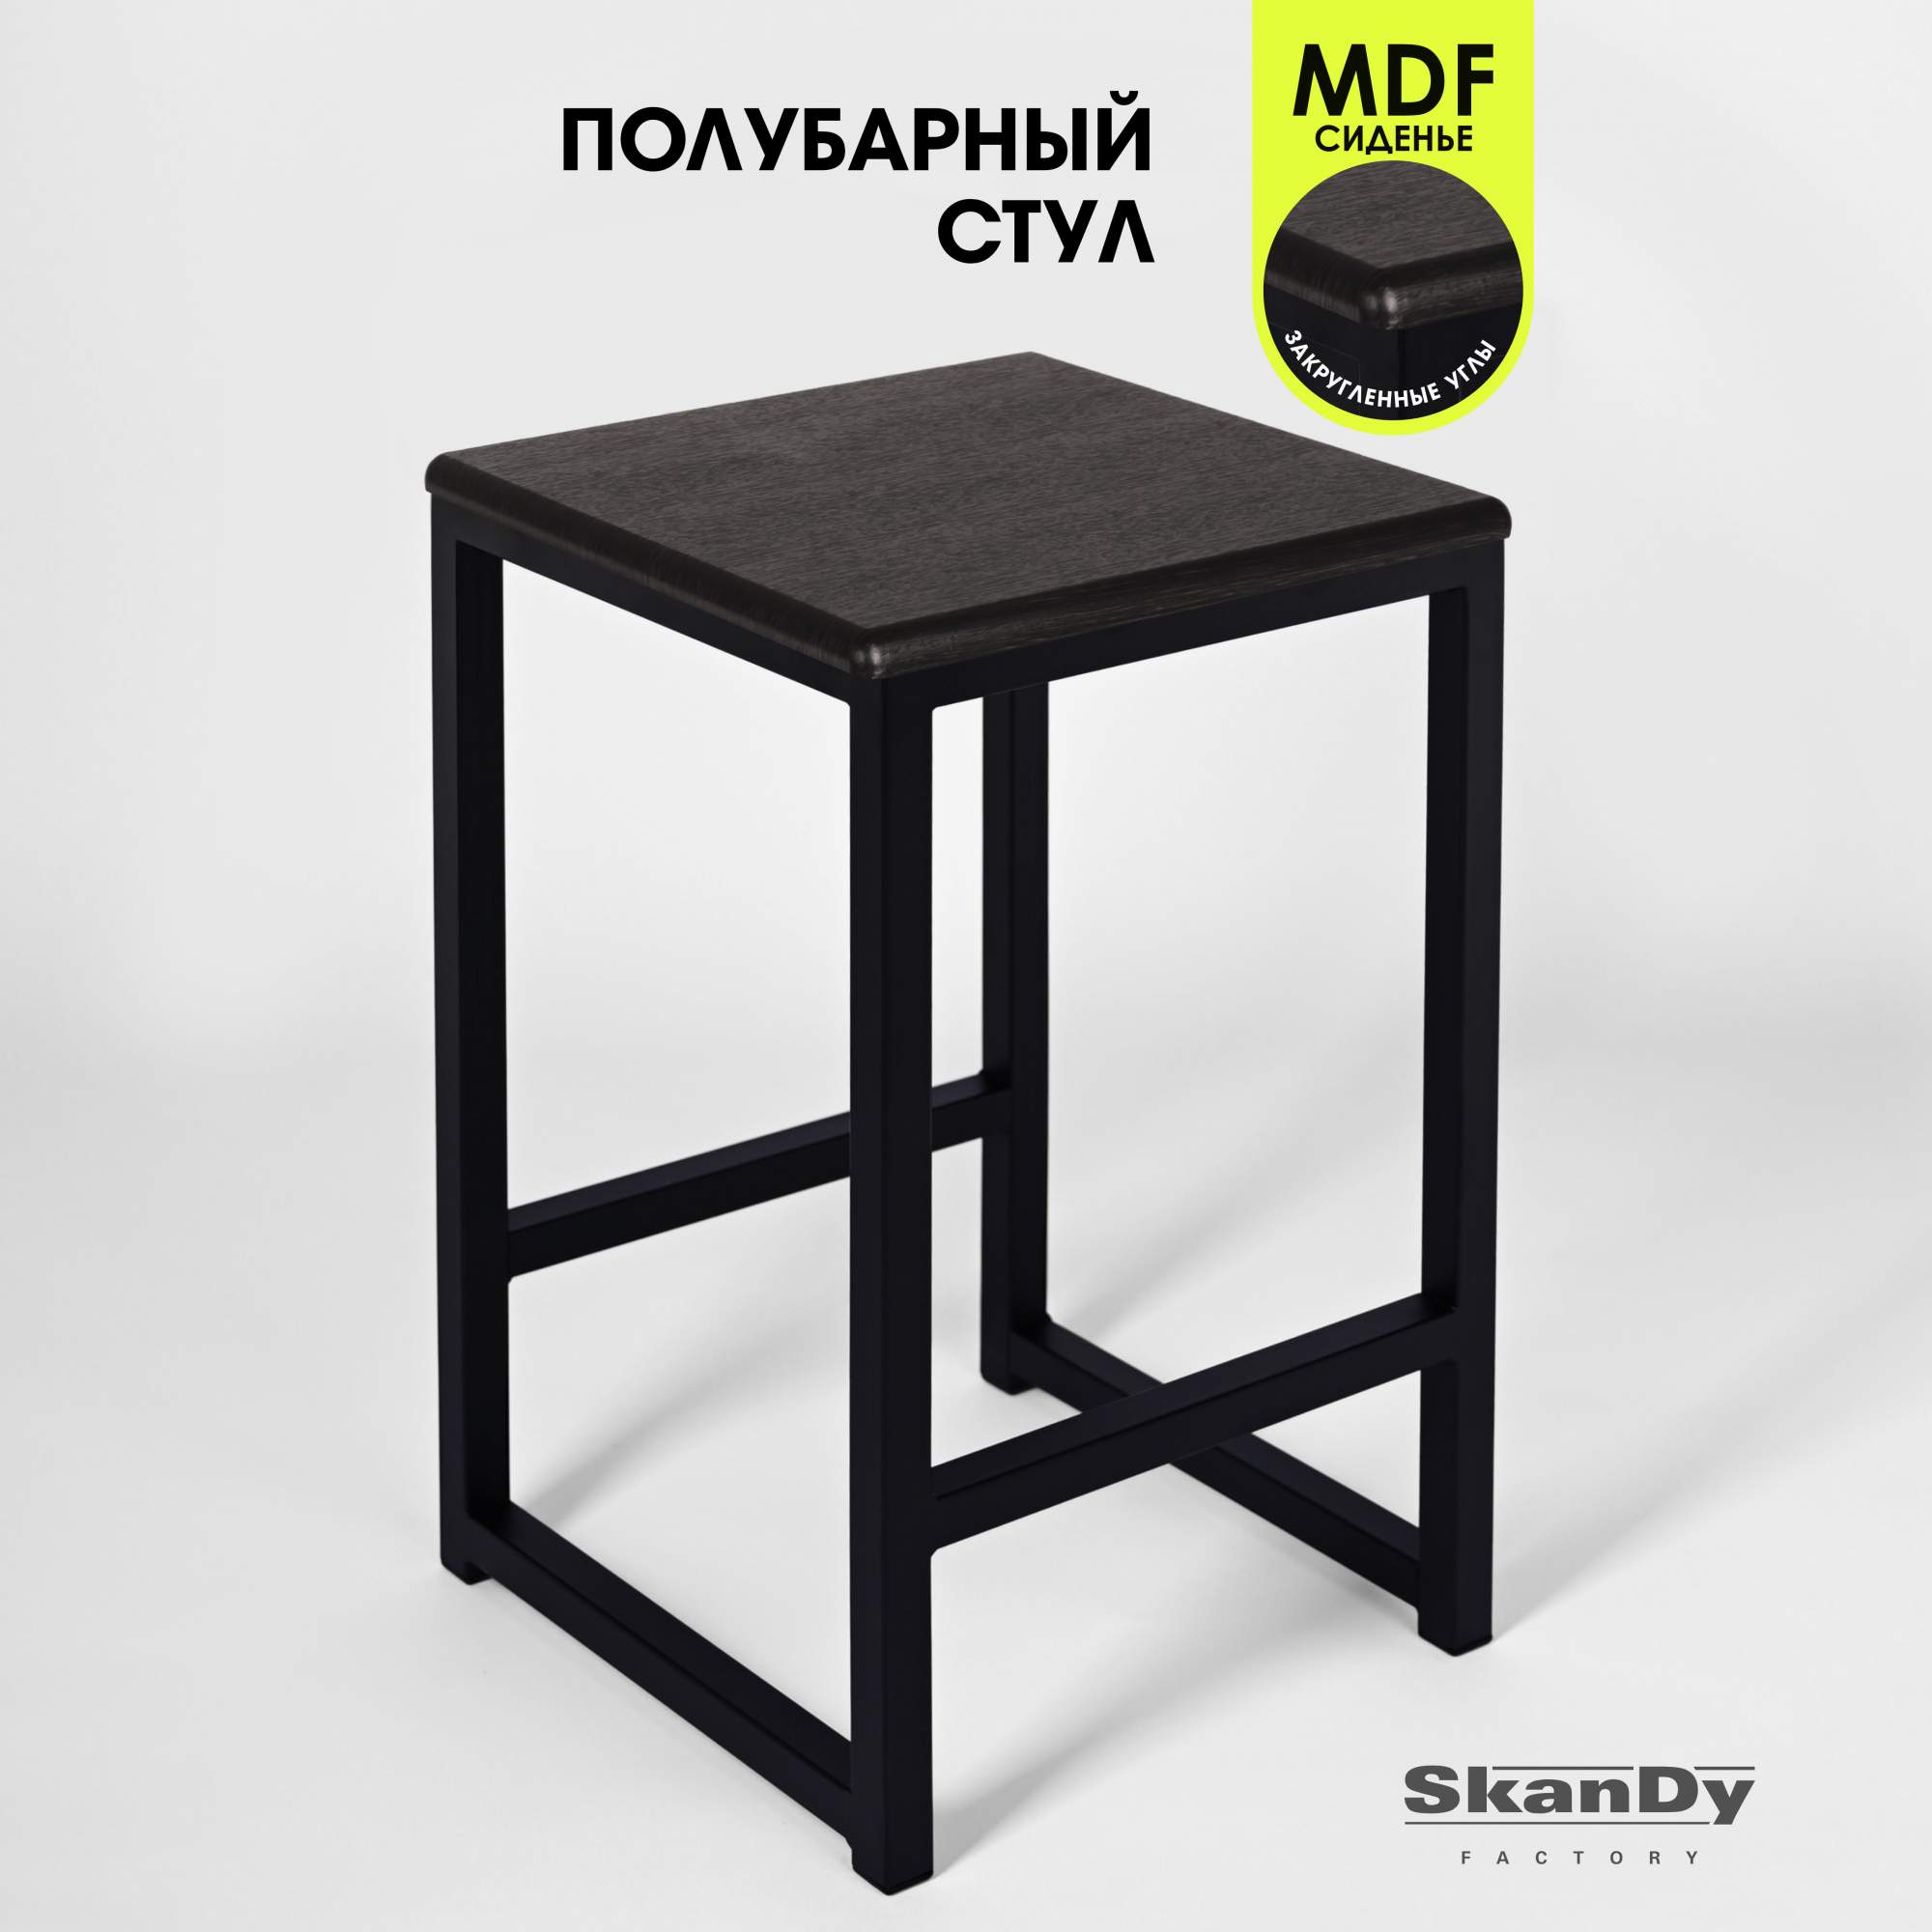 Полубарный стул для кухни SkanDy Factory, 60 см, венге